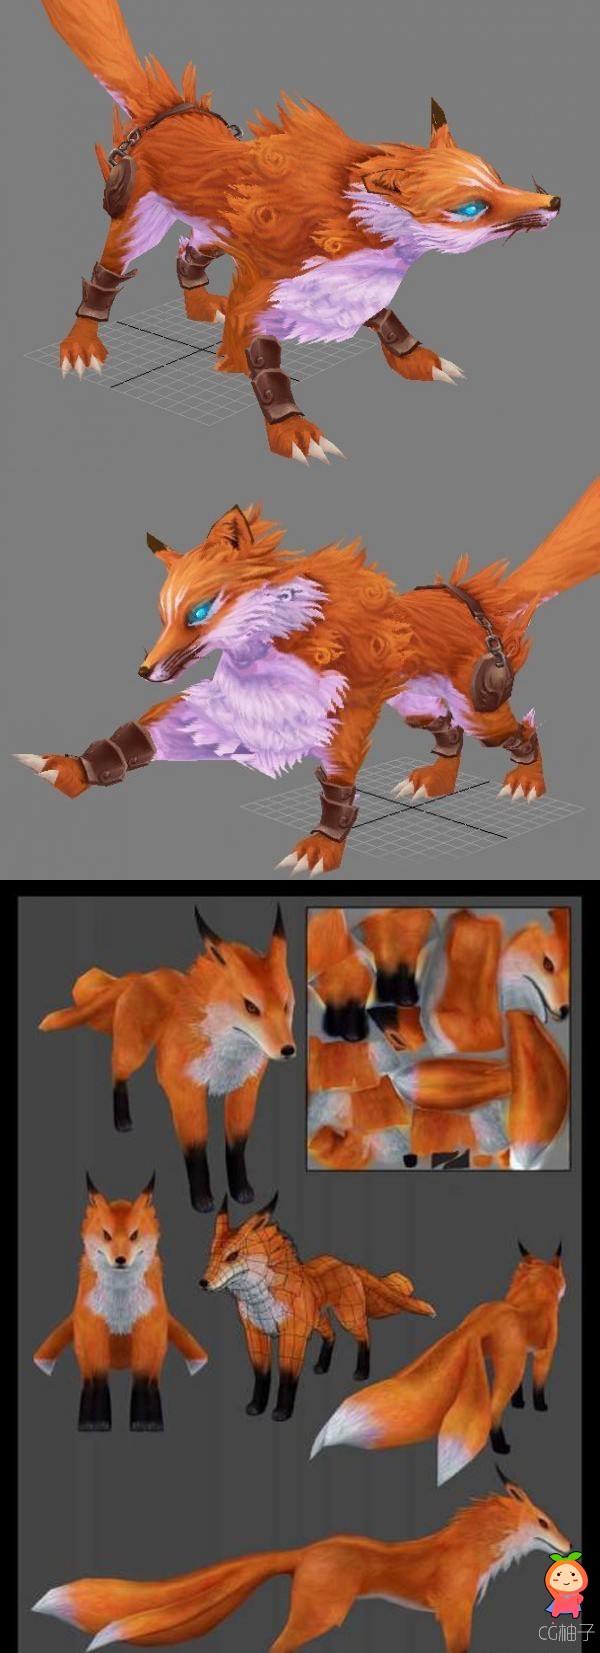 九尾狐3D角色模型 红狐狸模型 飞天狐模型 哺乳类动物3D模型